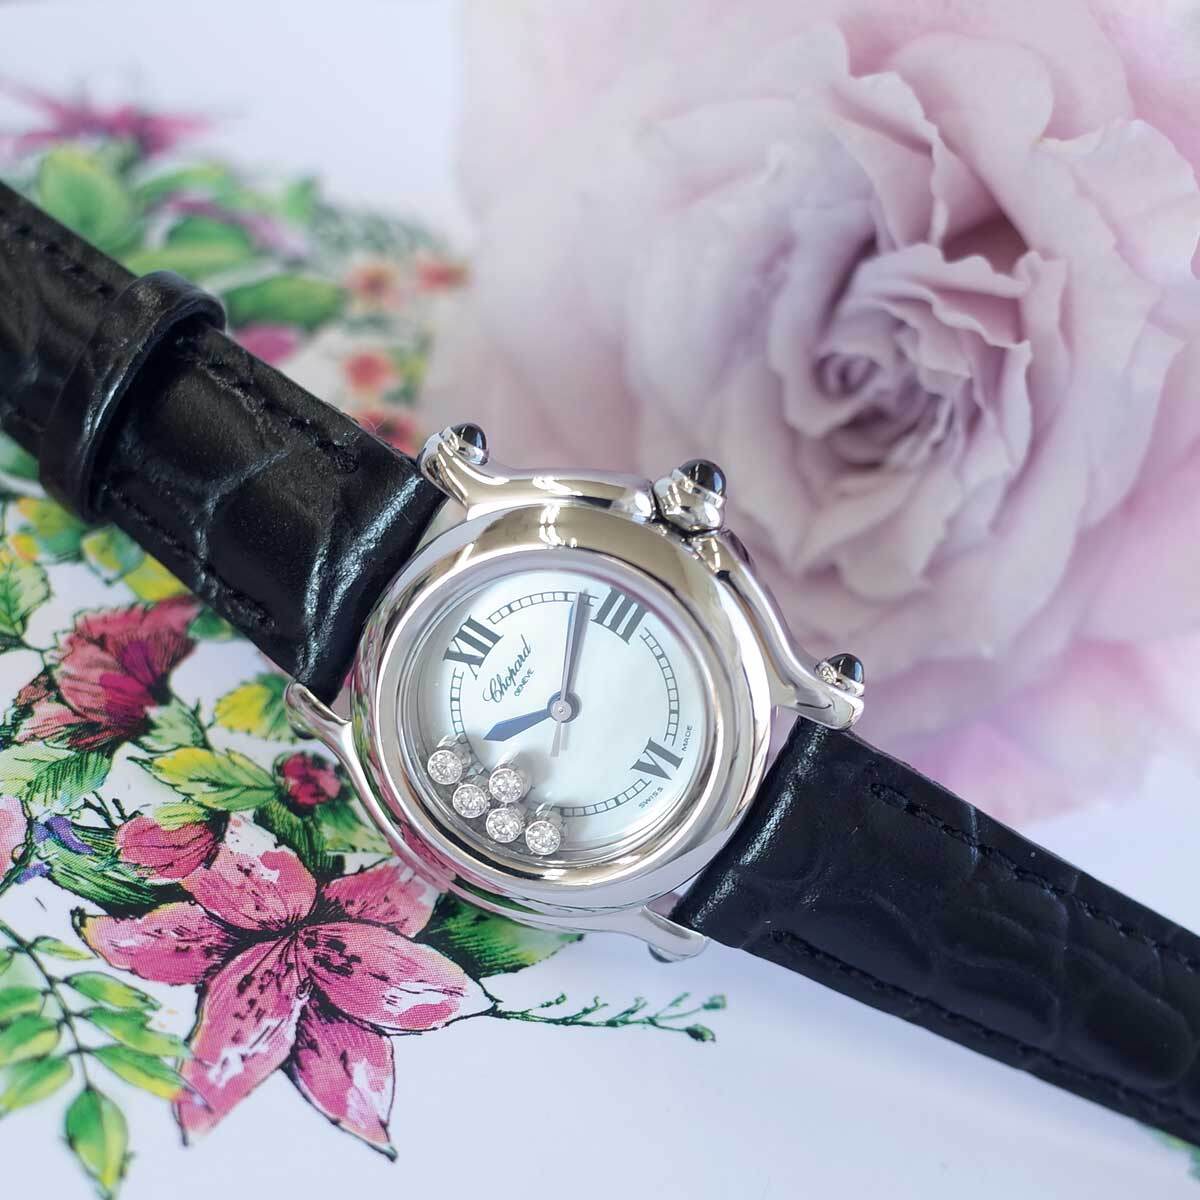  прекрасный товар Chopard happy спорт 8245 ракушка diamond ювелирные изделия часы новый товар ремень гарантия иметь женский кварц наручные часы CHOPARD 1 год гарантия 